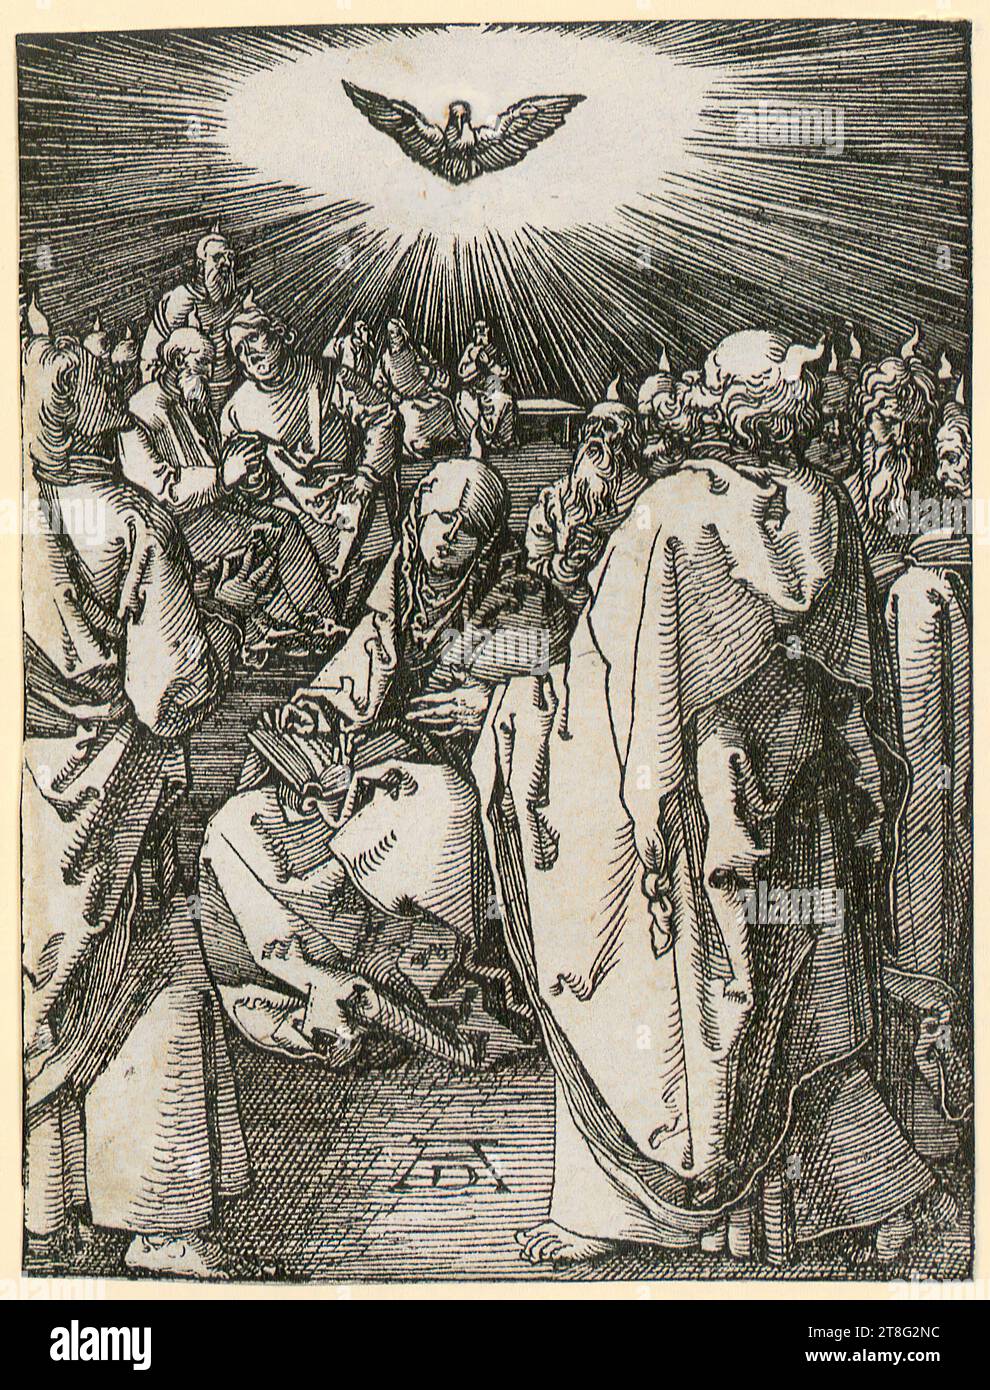 Albrecht Dürer (1471 - 1528), petite passion sur bois, Albrecht Dürer (1471 - 1528), Mission du Saint-Esprit, feuille 36 de la série 'petite passion sur bois', médium : circa 1510, gravure sur bois, taille de la feuille : 12,5 x 9,5 cm, monogrammé en bas au centre 'AD Banque D'Images